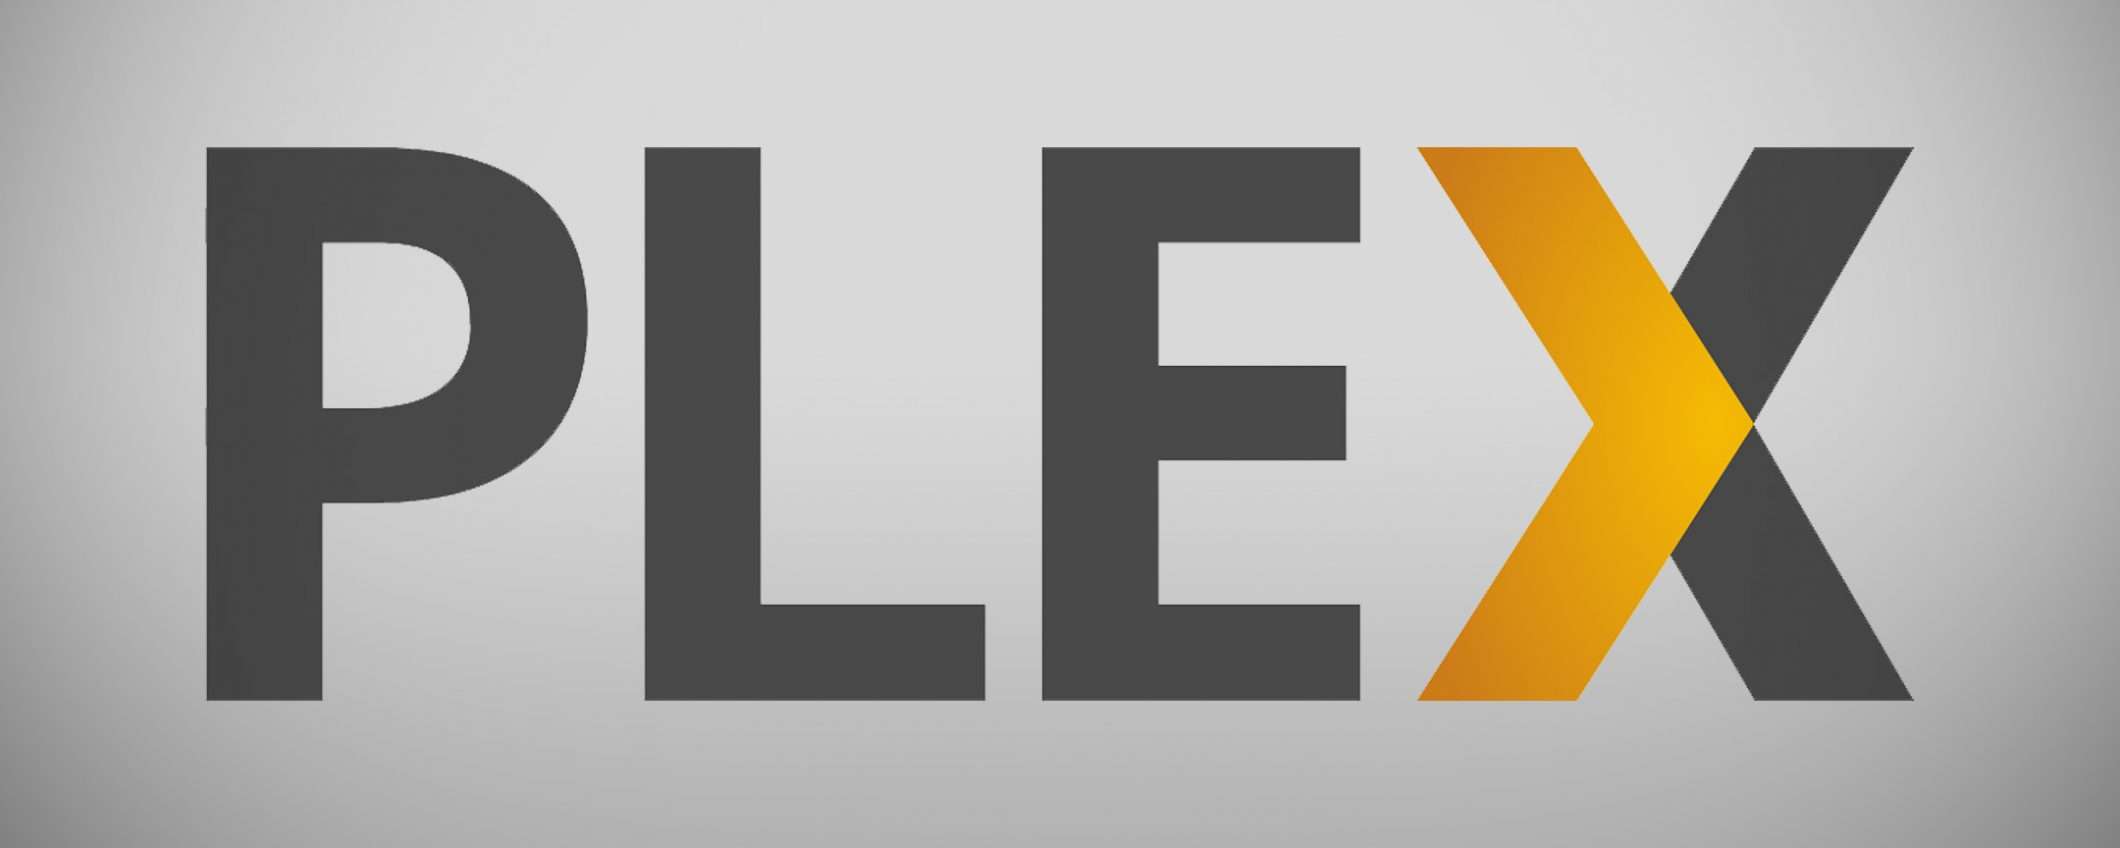 I film di Plex in streaming gratis anche in Italia